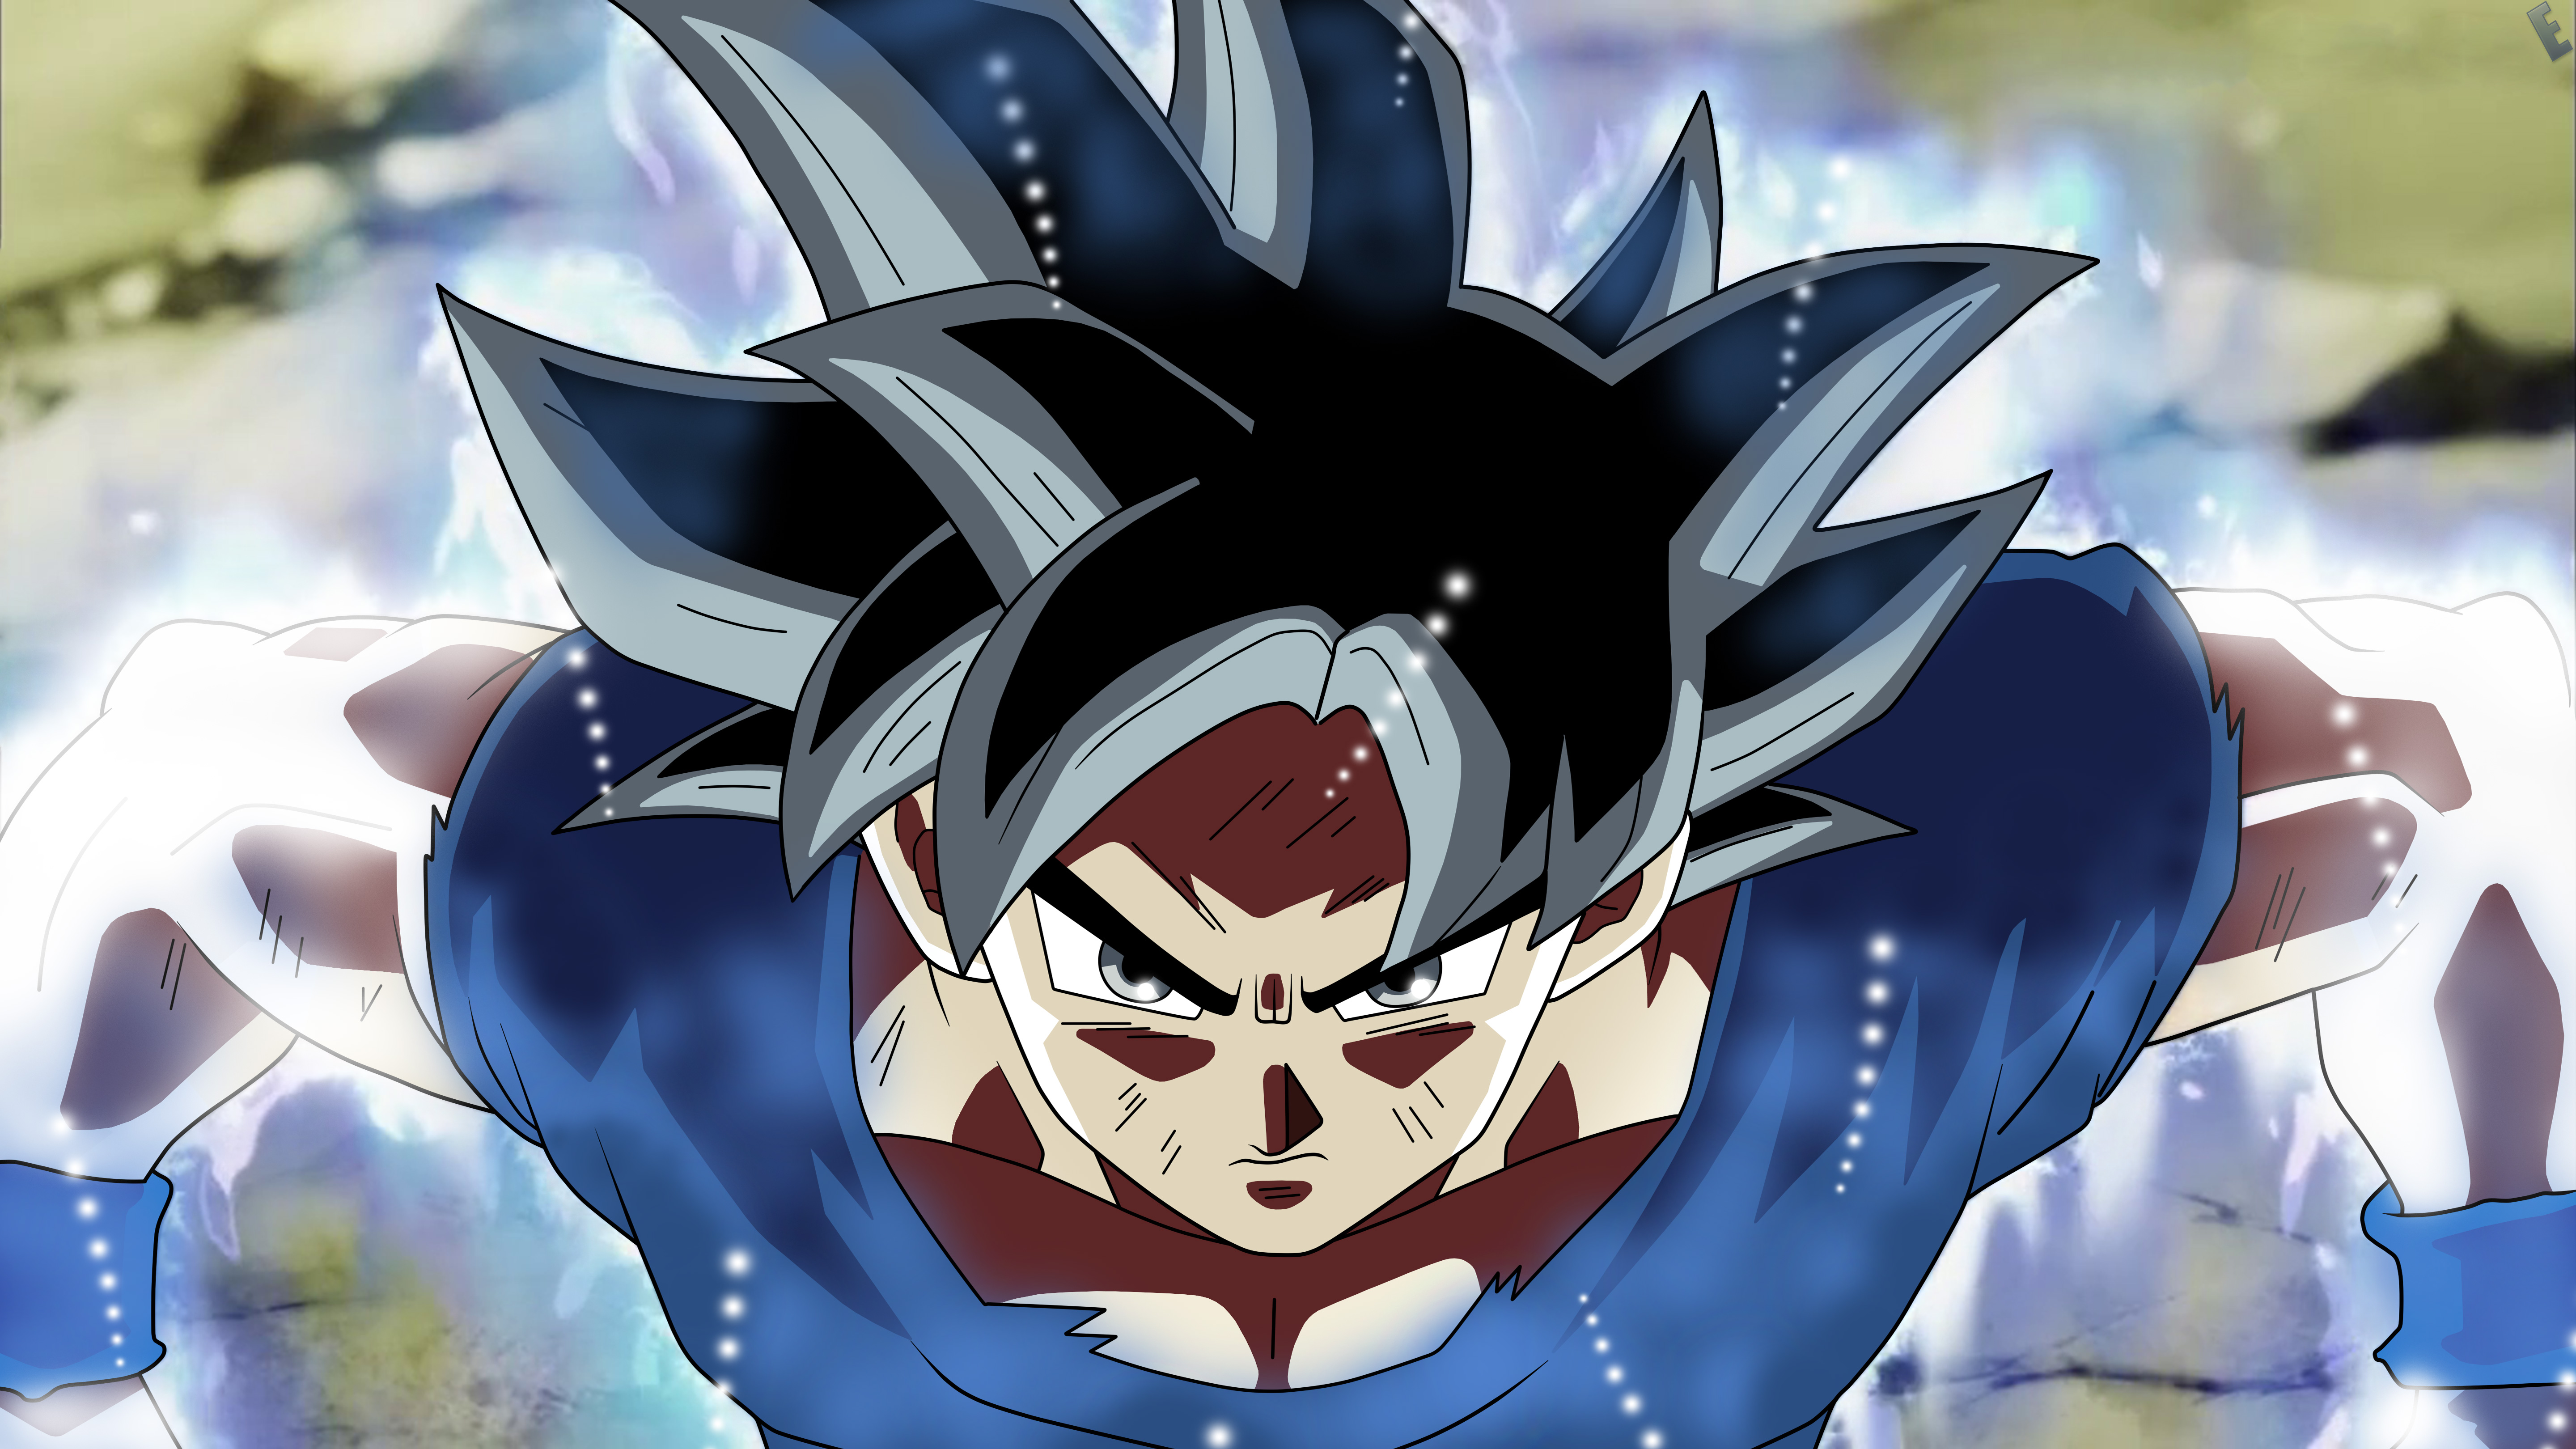 Goku Dragon Ball Super Anime 5k Hd Anime 4k Wallpapers Images